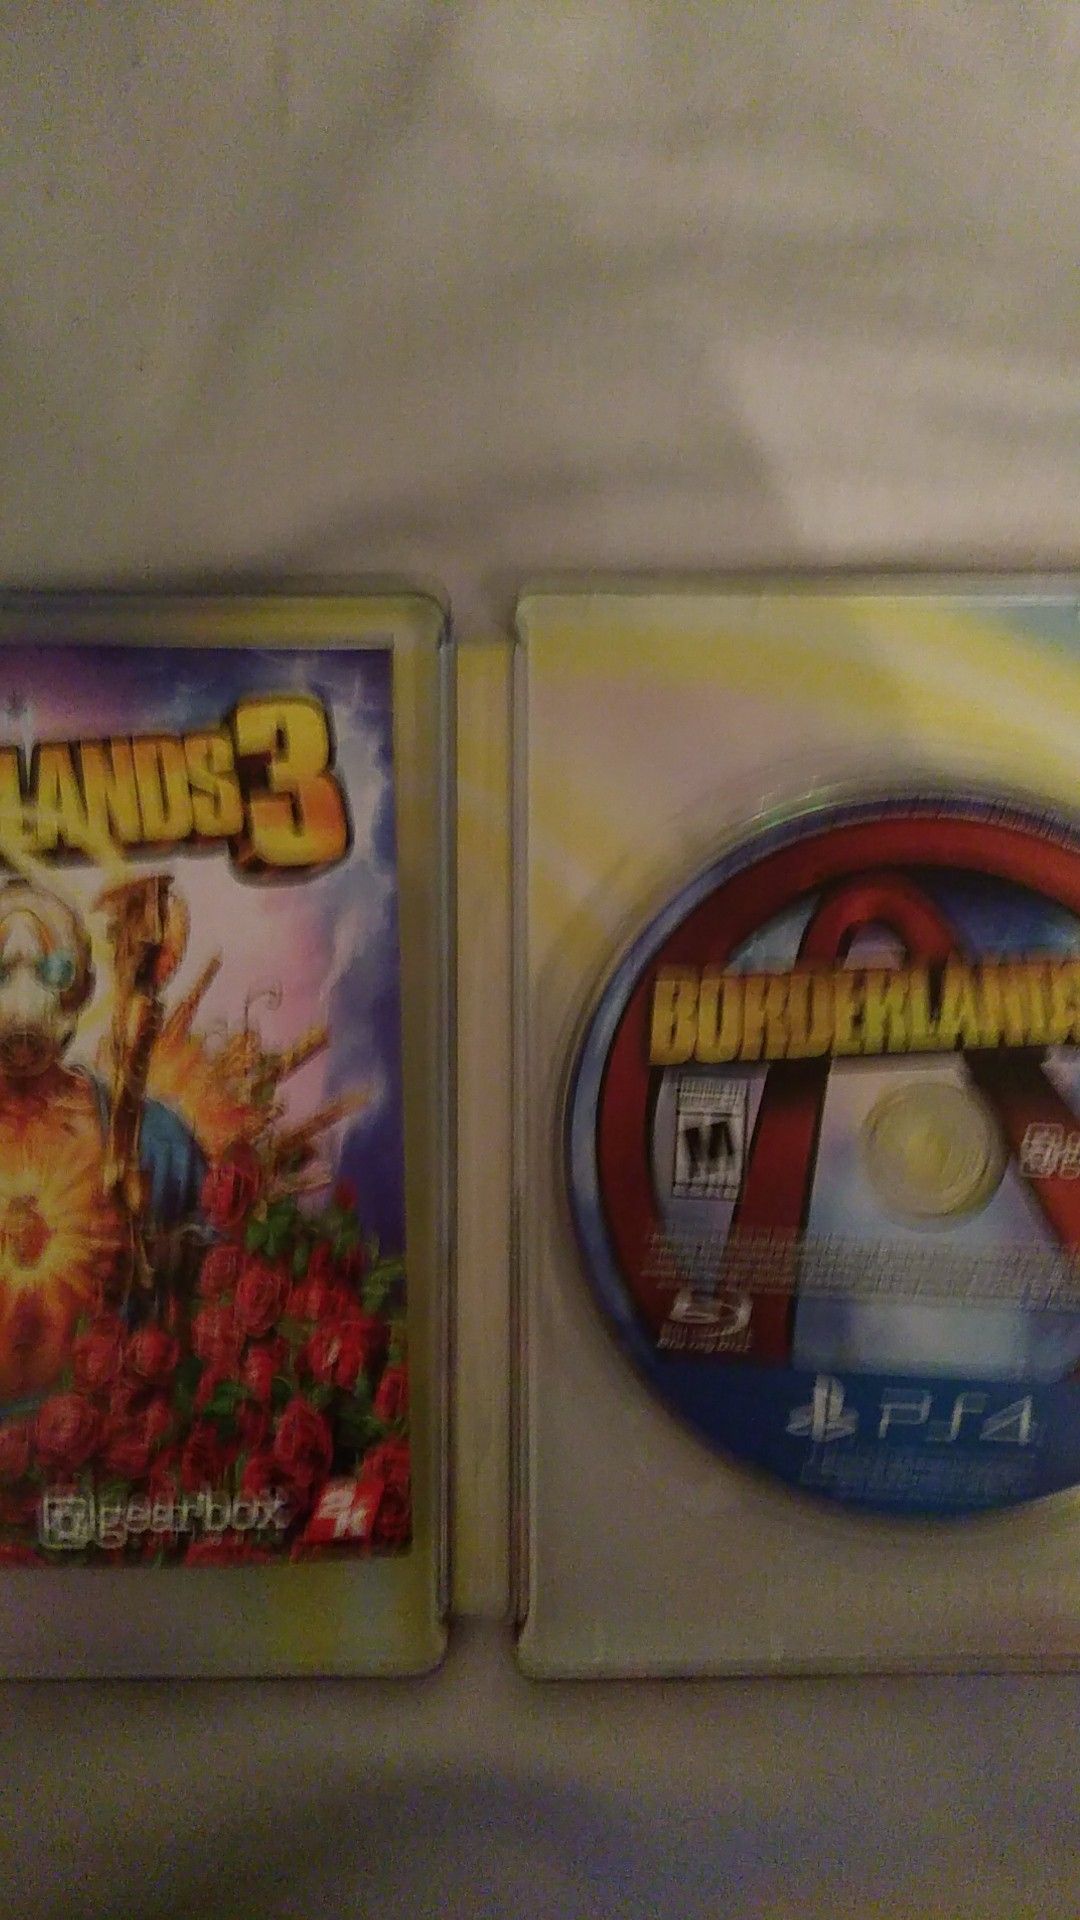 Borderlands 3 PS4 game